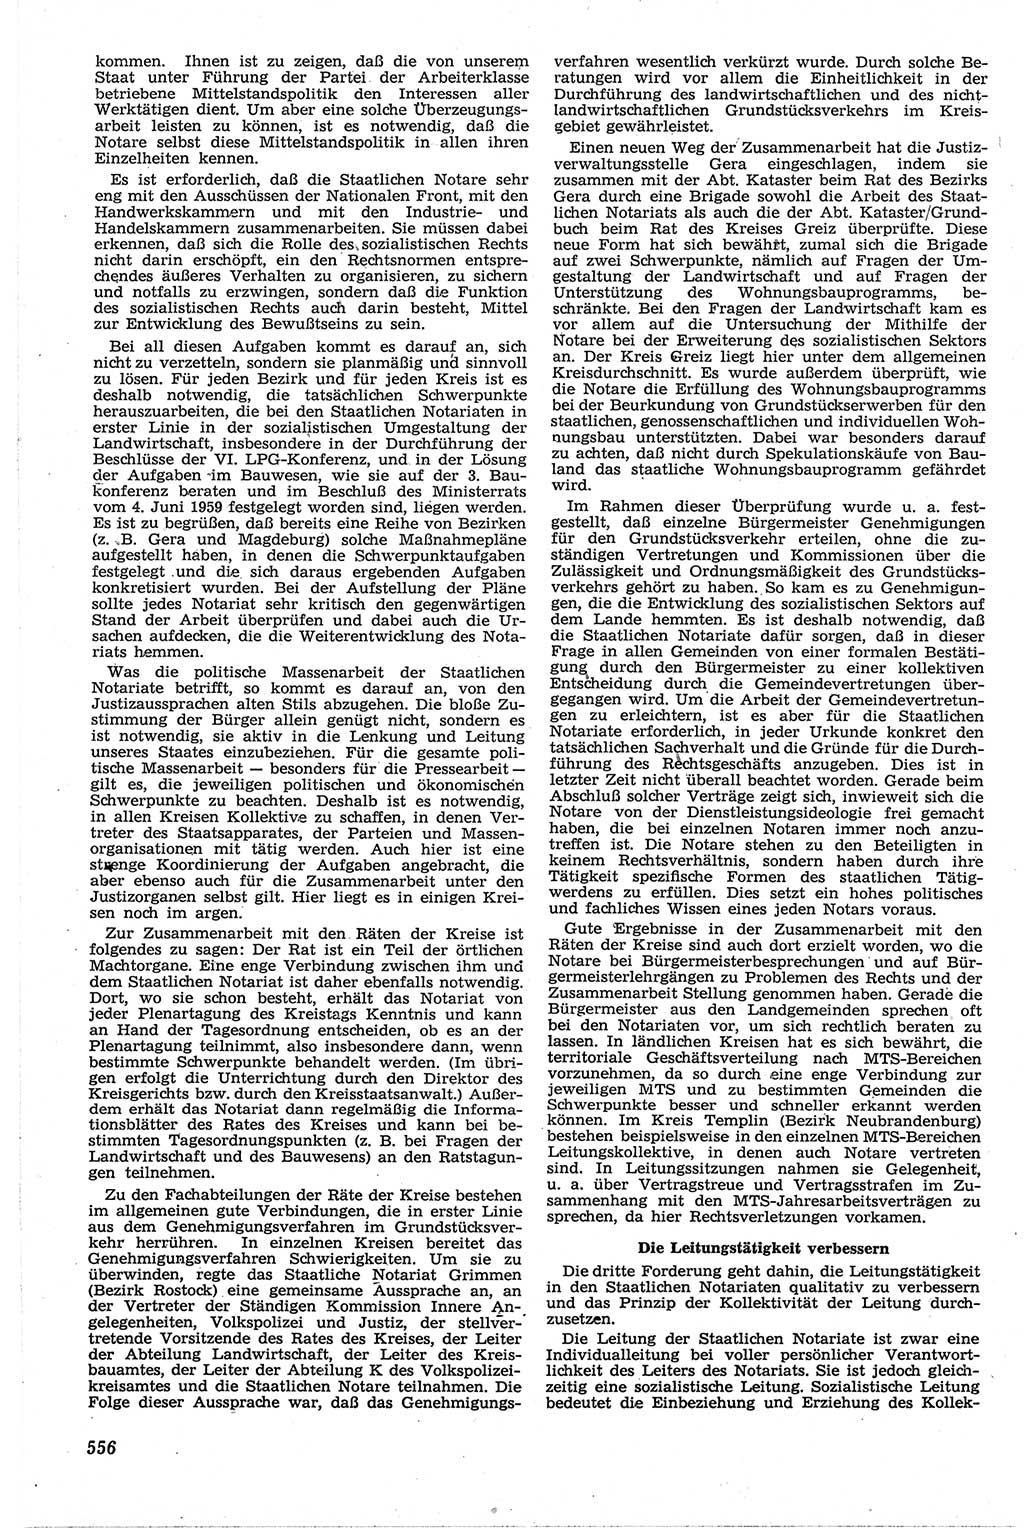 Neue Justiz (NJ), Zeitschrift für Recht und Rechtswissenschaft [Deutsche Demokratische Republik (DDR)], 13. Jahrgang 1959, Seite 556 (NJ DDR 1959, S. 556)